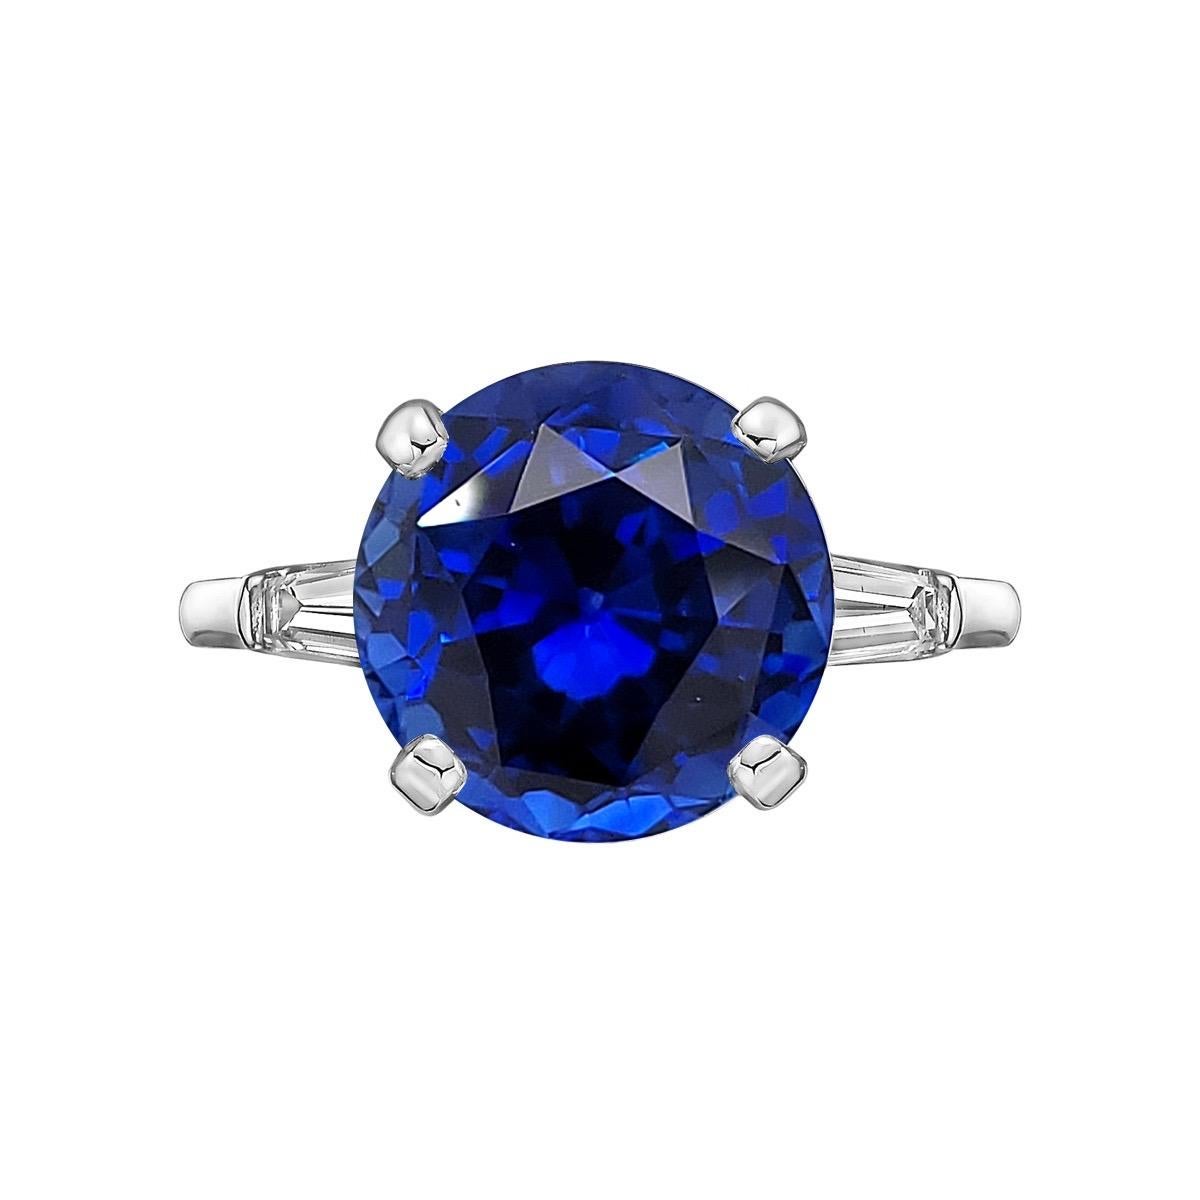 Du coffre-fort d'Emilio Jewelry New York,
Un saphir de Ceylan rare et rond, de couleur bleu royal, serti dans cette bague simple et très élégante. Poids total approximatif de 8 ct. Veuillez vous renseigner pour plus d'informations. 
Vous allez